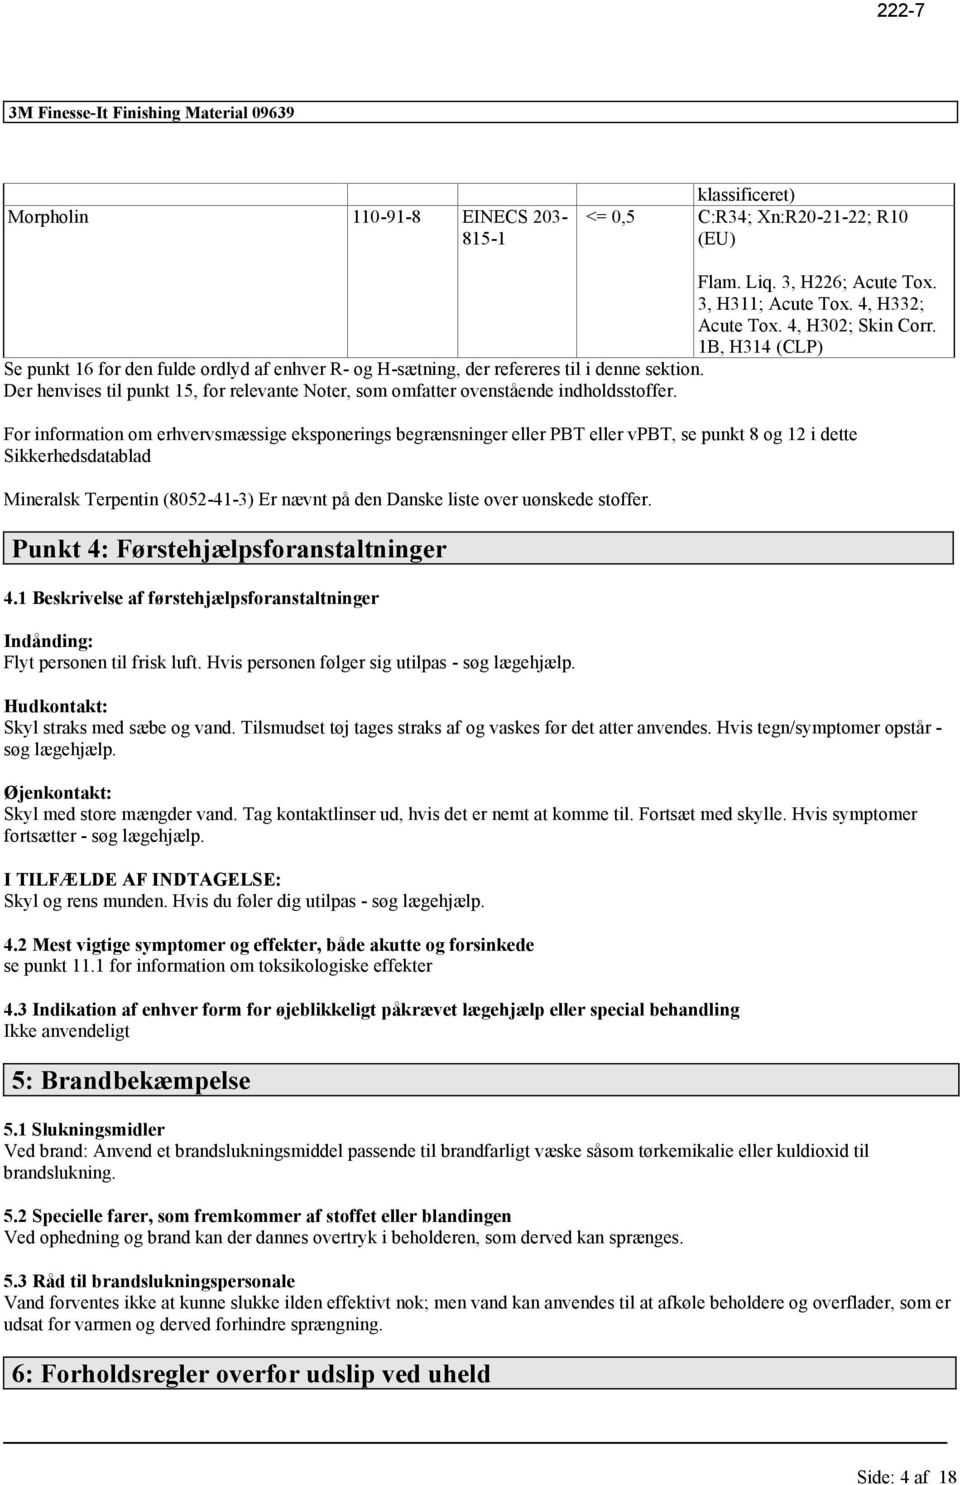 For inmation om erhvervsmæssige eksponerings begrænsninger PBT vpbt, se punkt 8 og 12 i dette Sikkerhedsdatablad Mineralsk Terpentin (8052-41-3) Er nævnt på den Danske liste over uønskede stoffer.